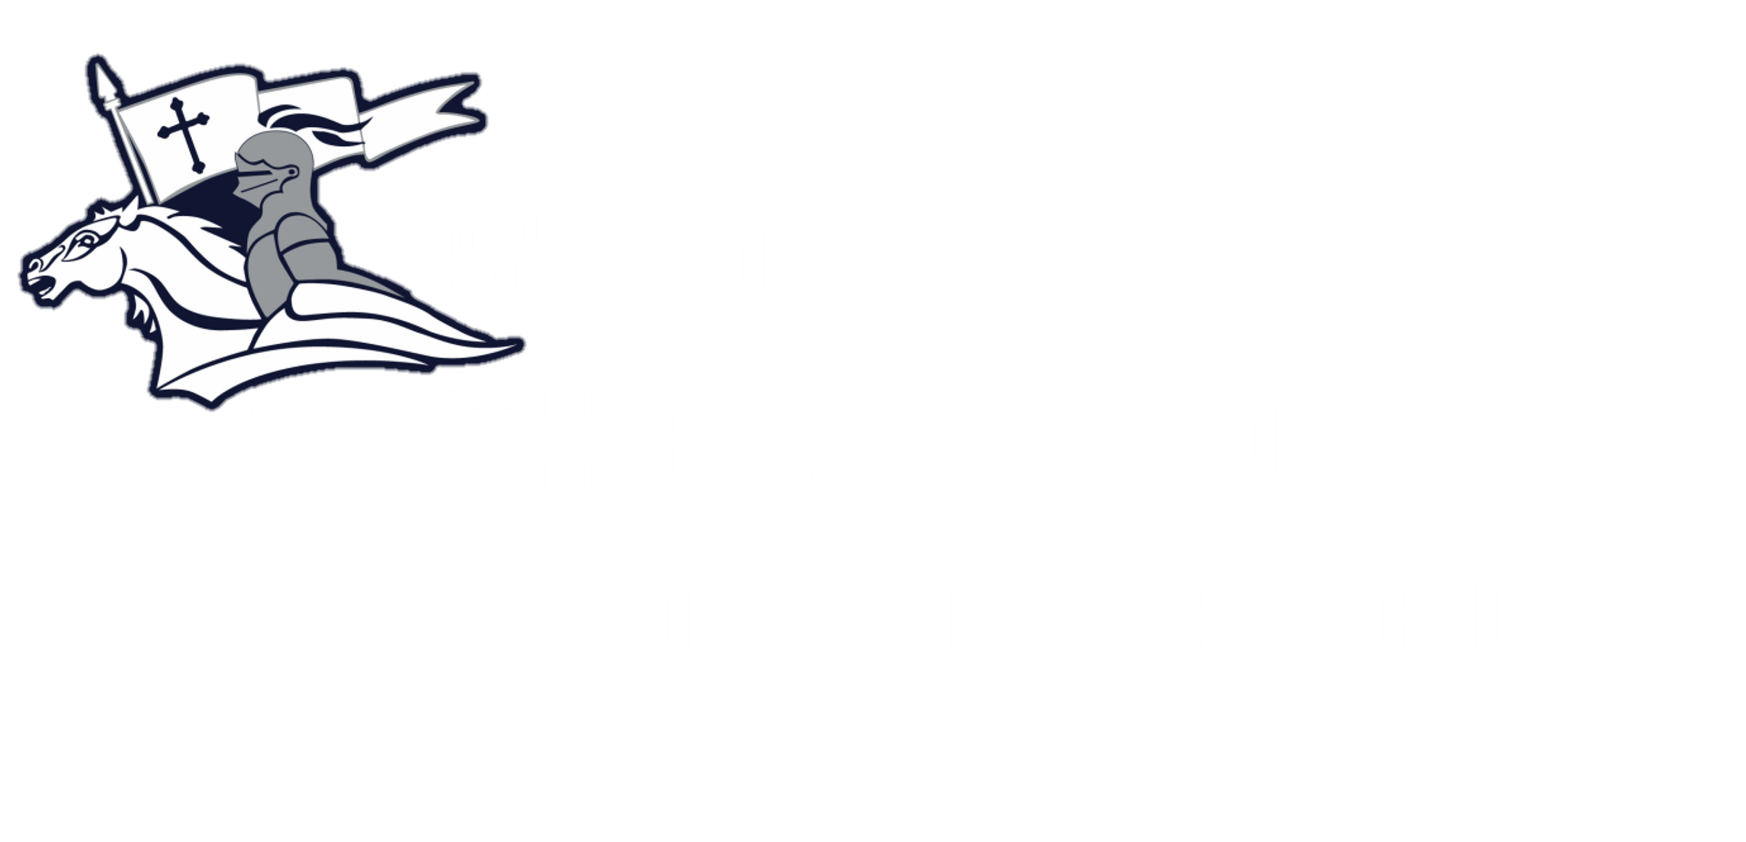 Logo for St. Thomas the Apostle Catholic School